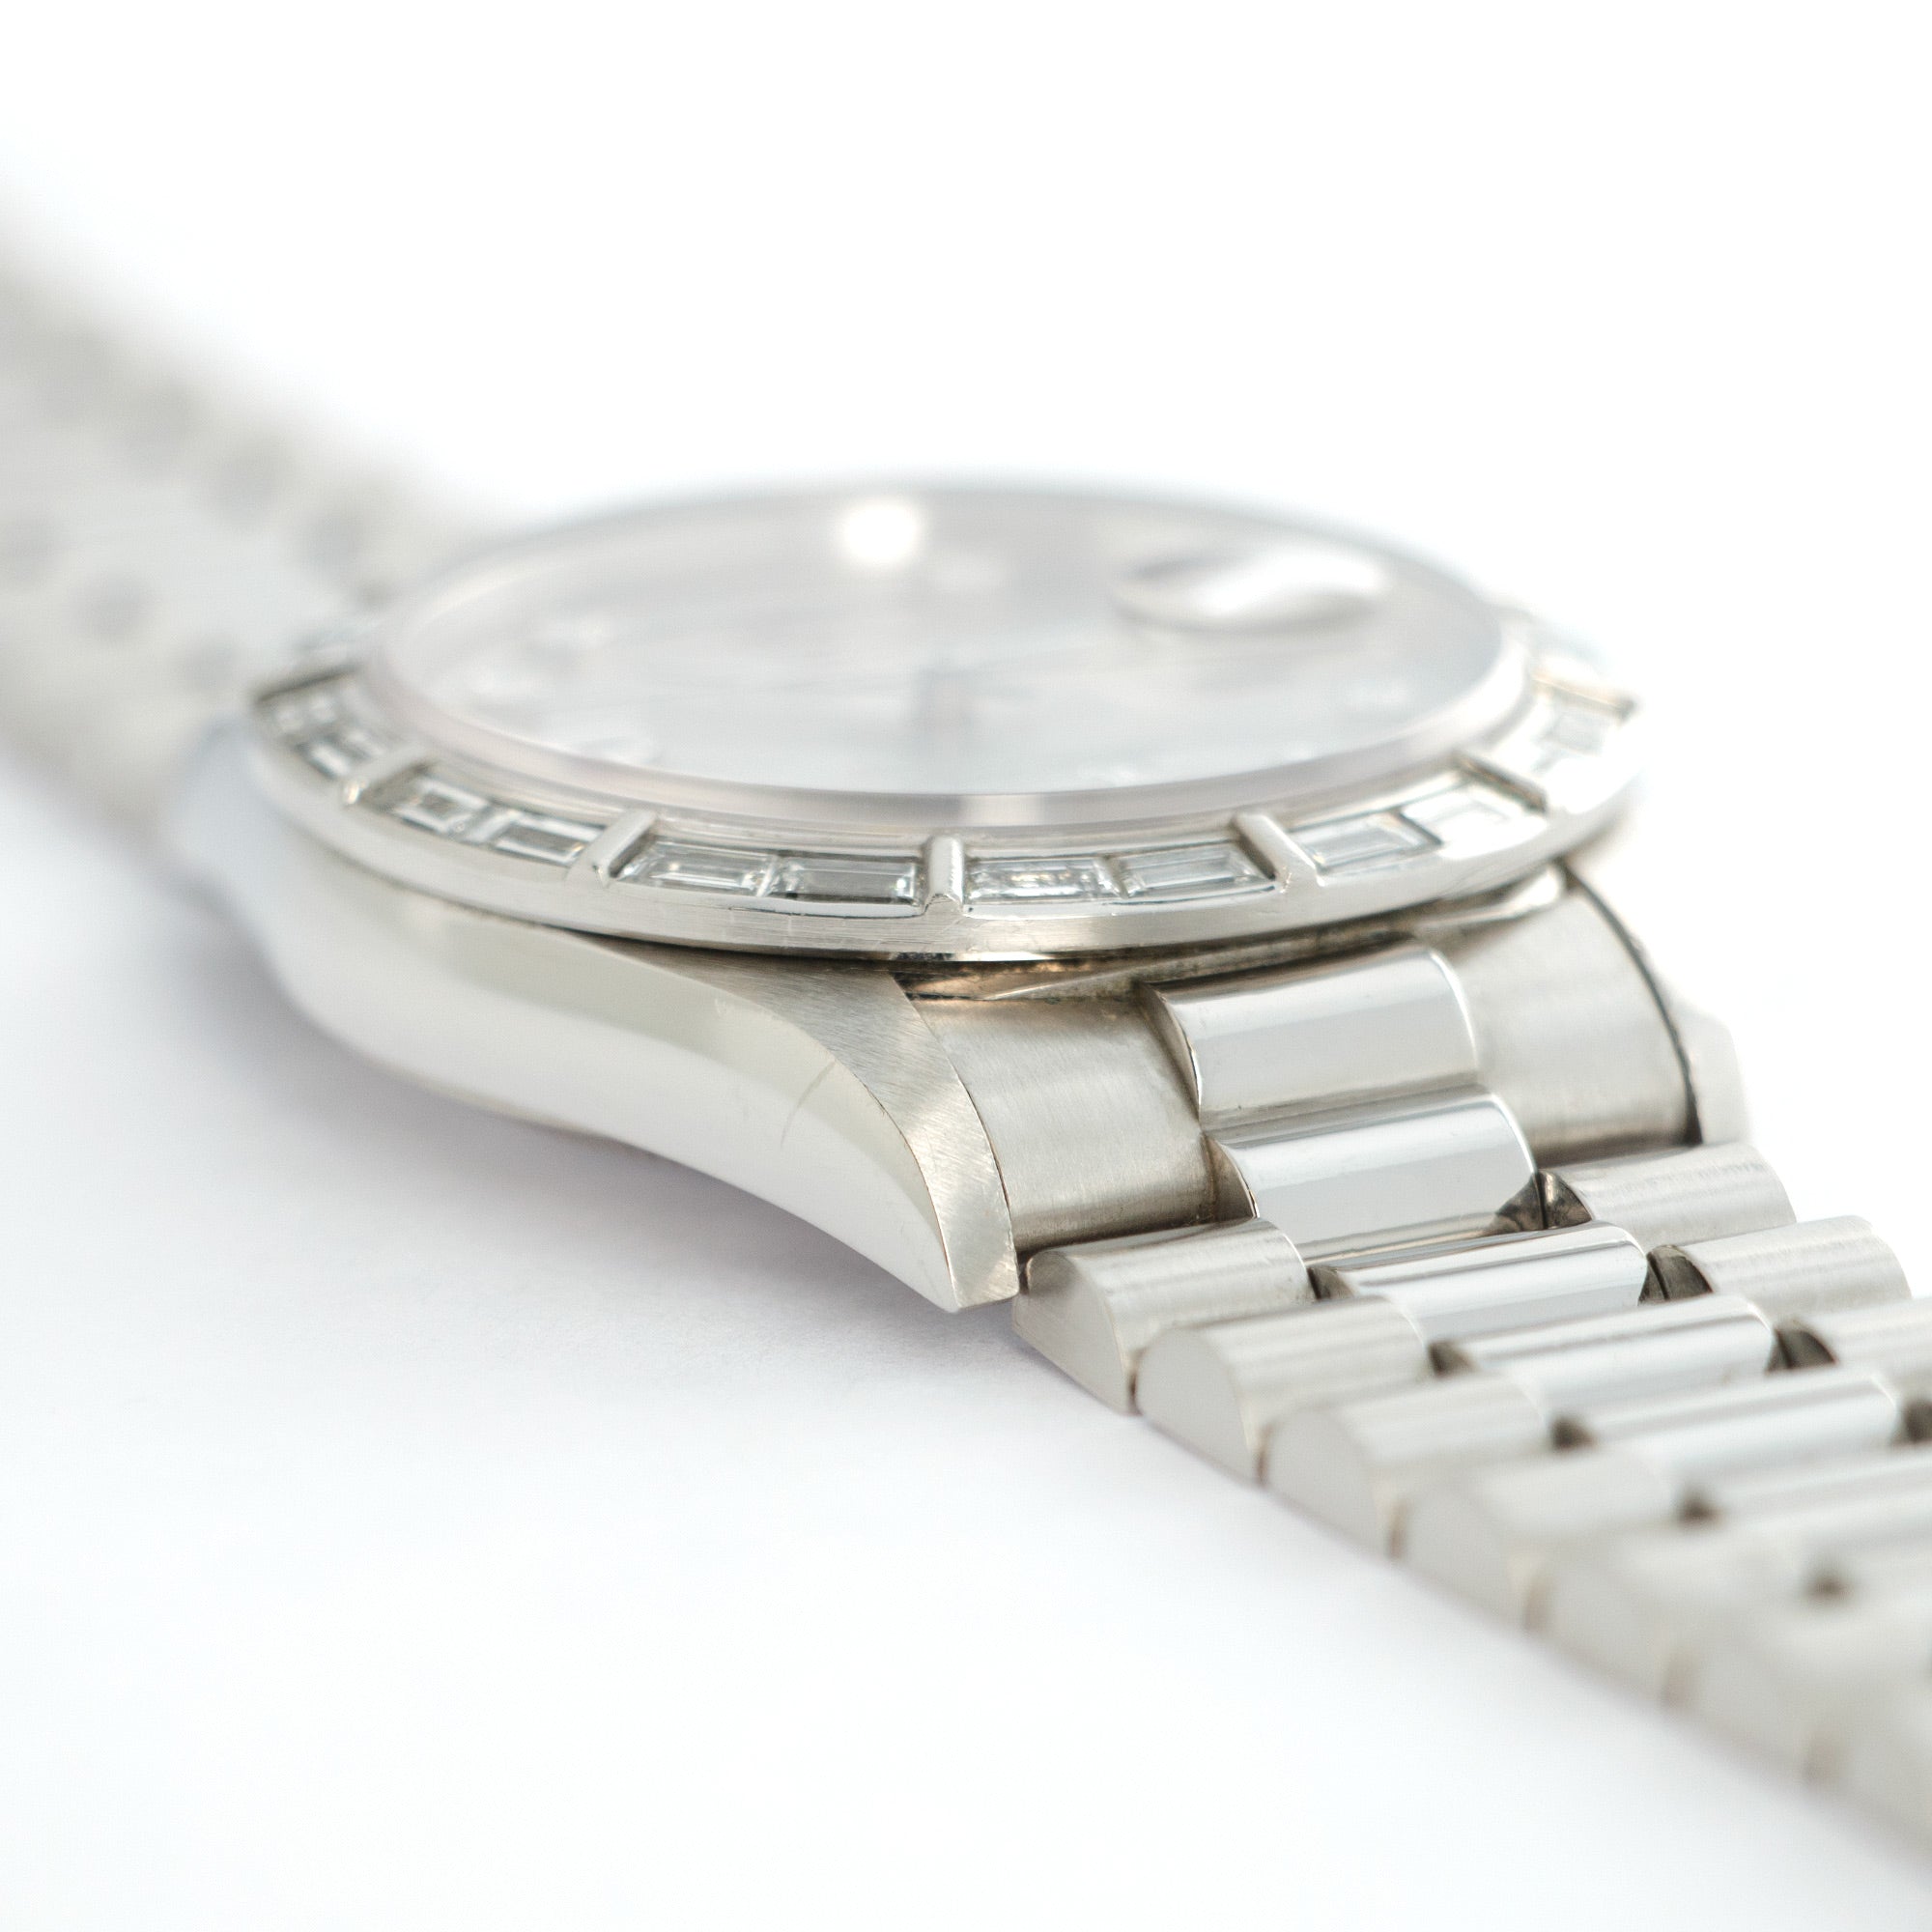 Rolex - Rolex Platinum Day-Date Diamond Watch Ref. 18366 - The Keystone Watches